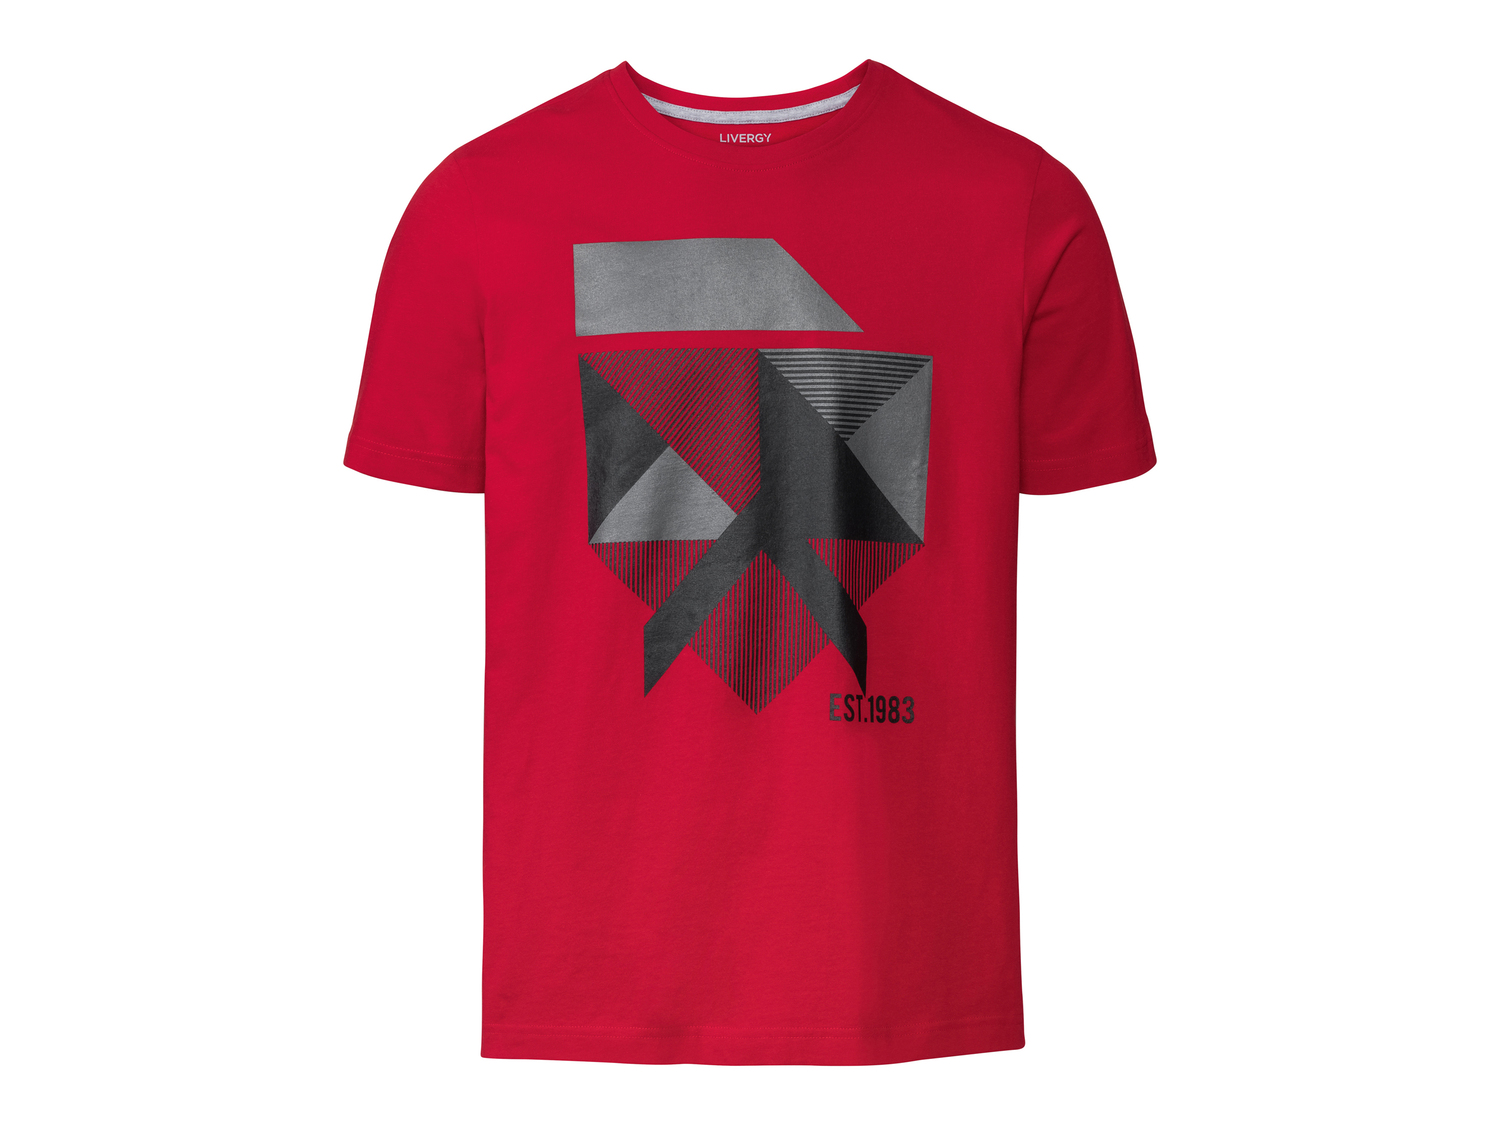 T-shirt da uomo Livergy, prezzo 4.99 € 
Misure: S-XL
Taglie disponibili

Caratteristiche ...